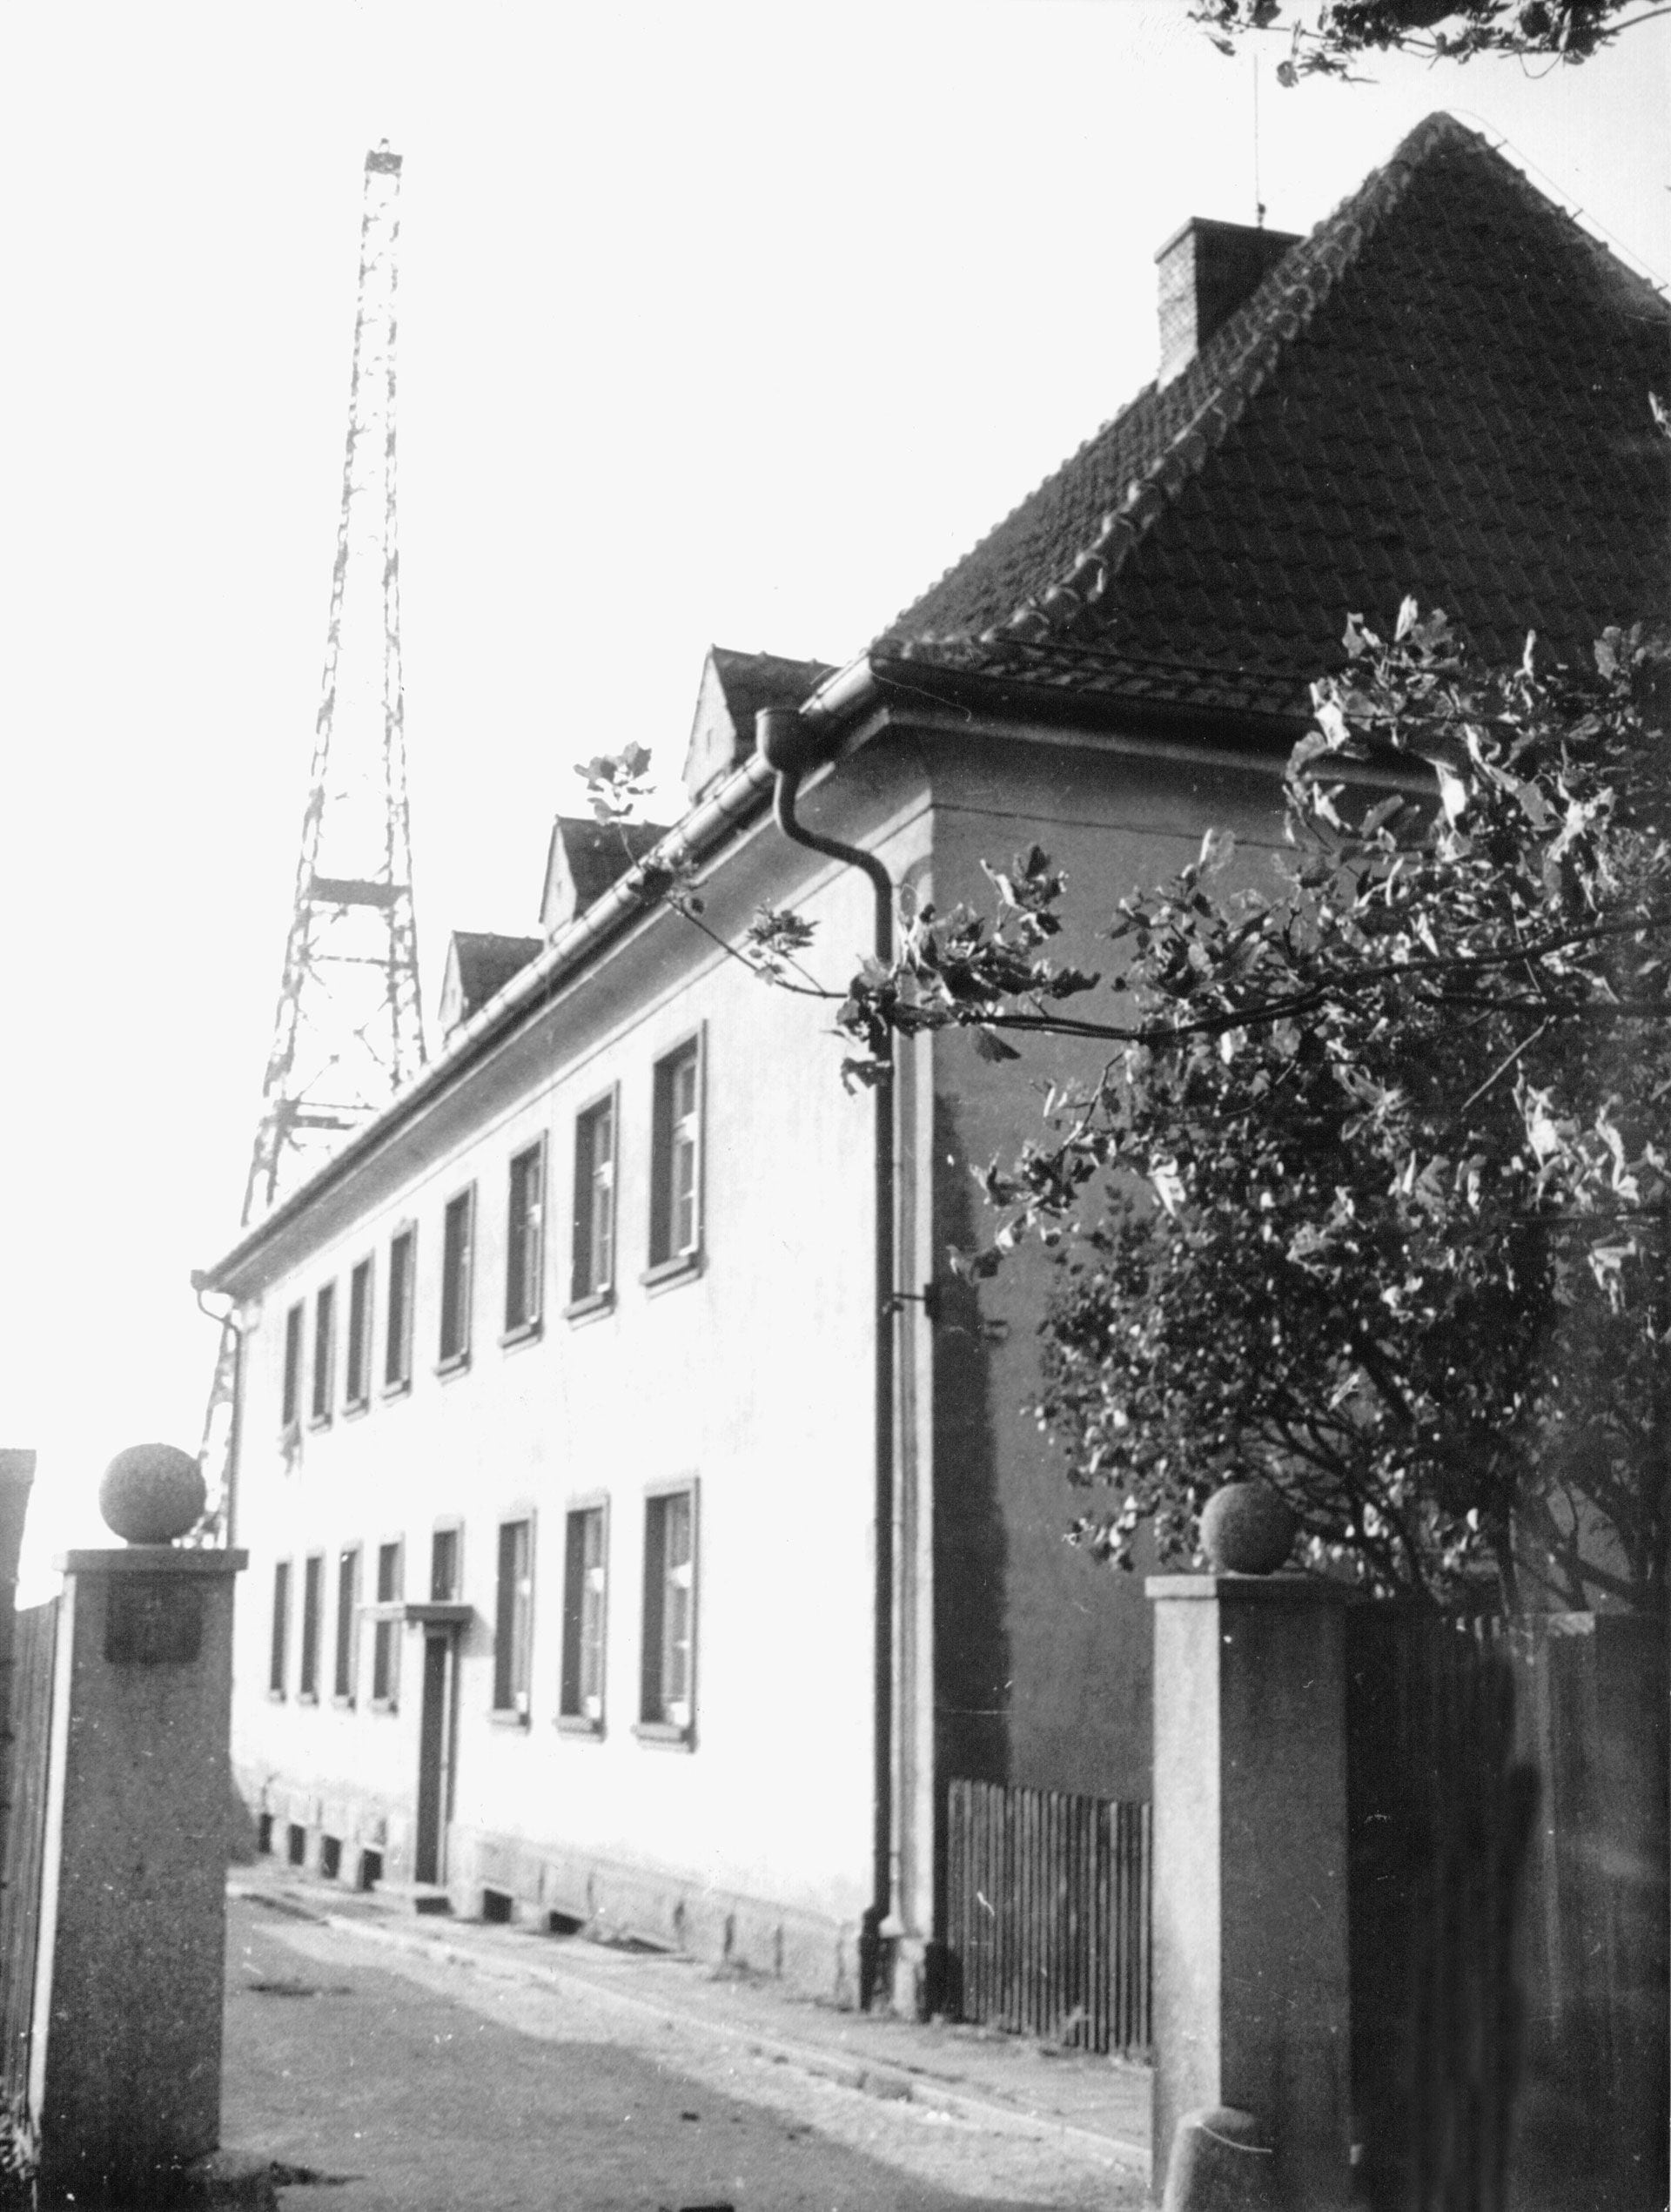 La radio de Gliewitz donde los nazis montaron un falso ataque polaco el 31 de agosto de 1939 para justificar su invasión a ese país 